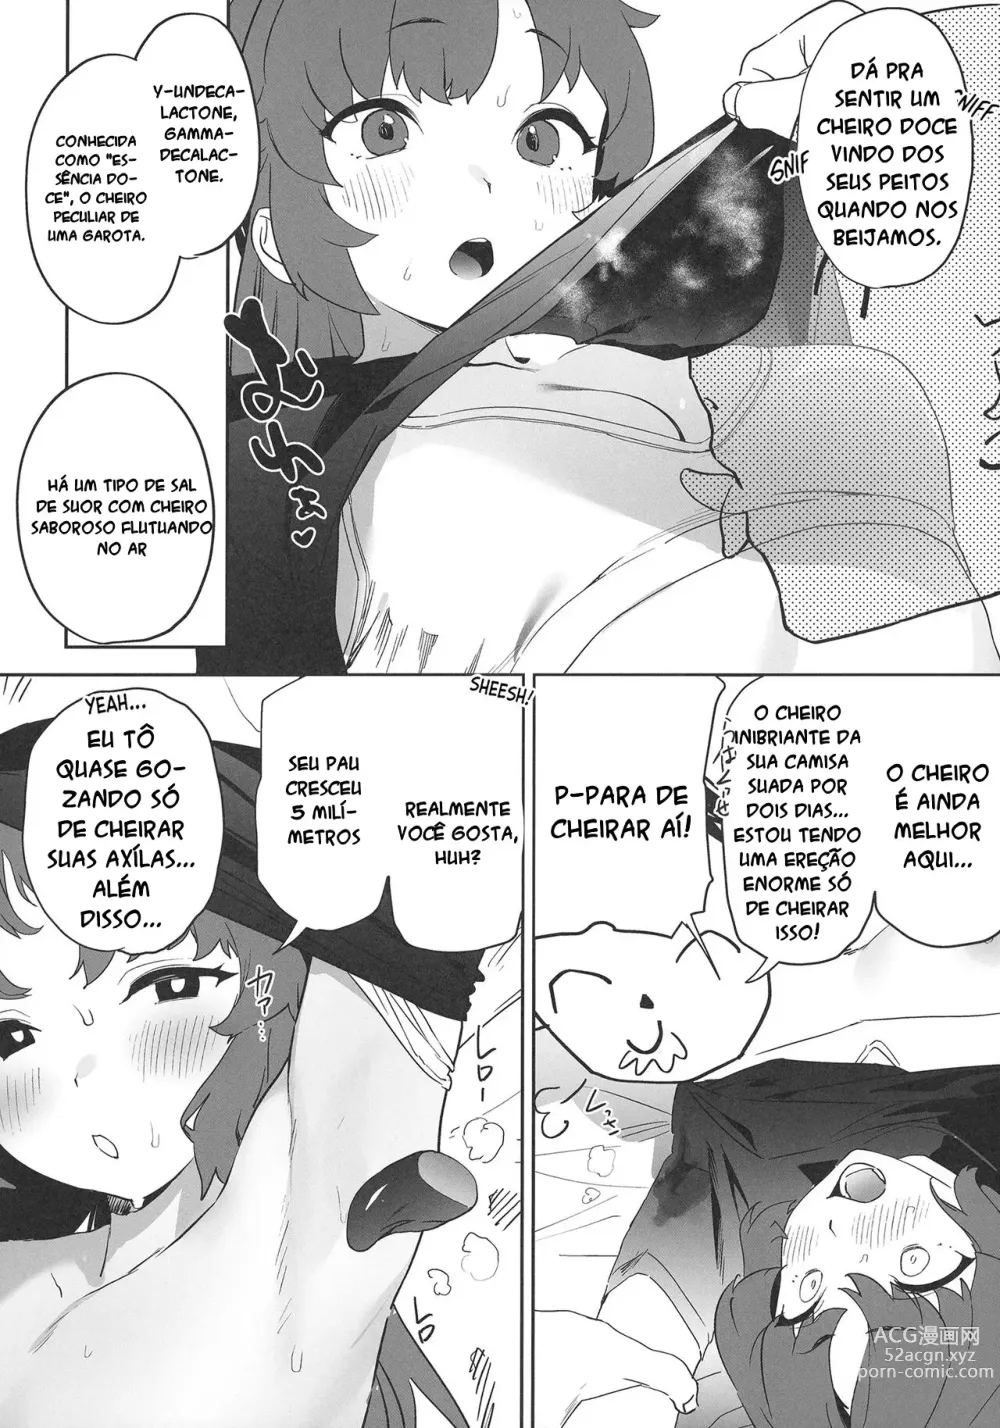 Page 16 of doujinshi Shimi Ase Yuuka no Mure Momo Manko